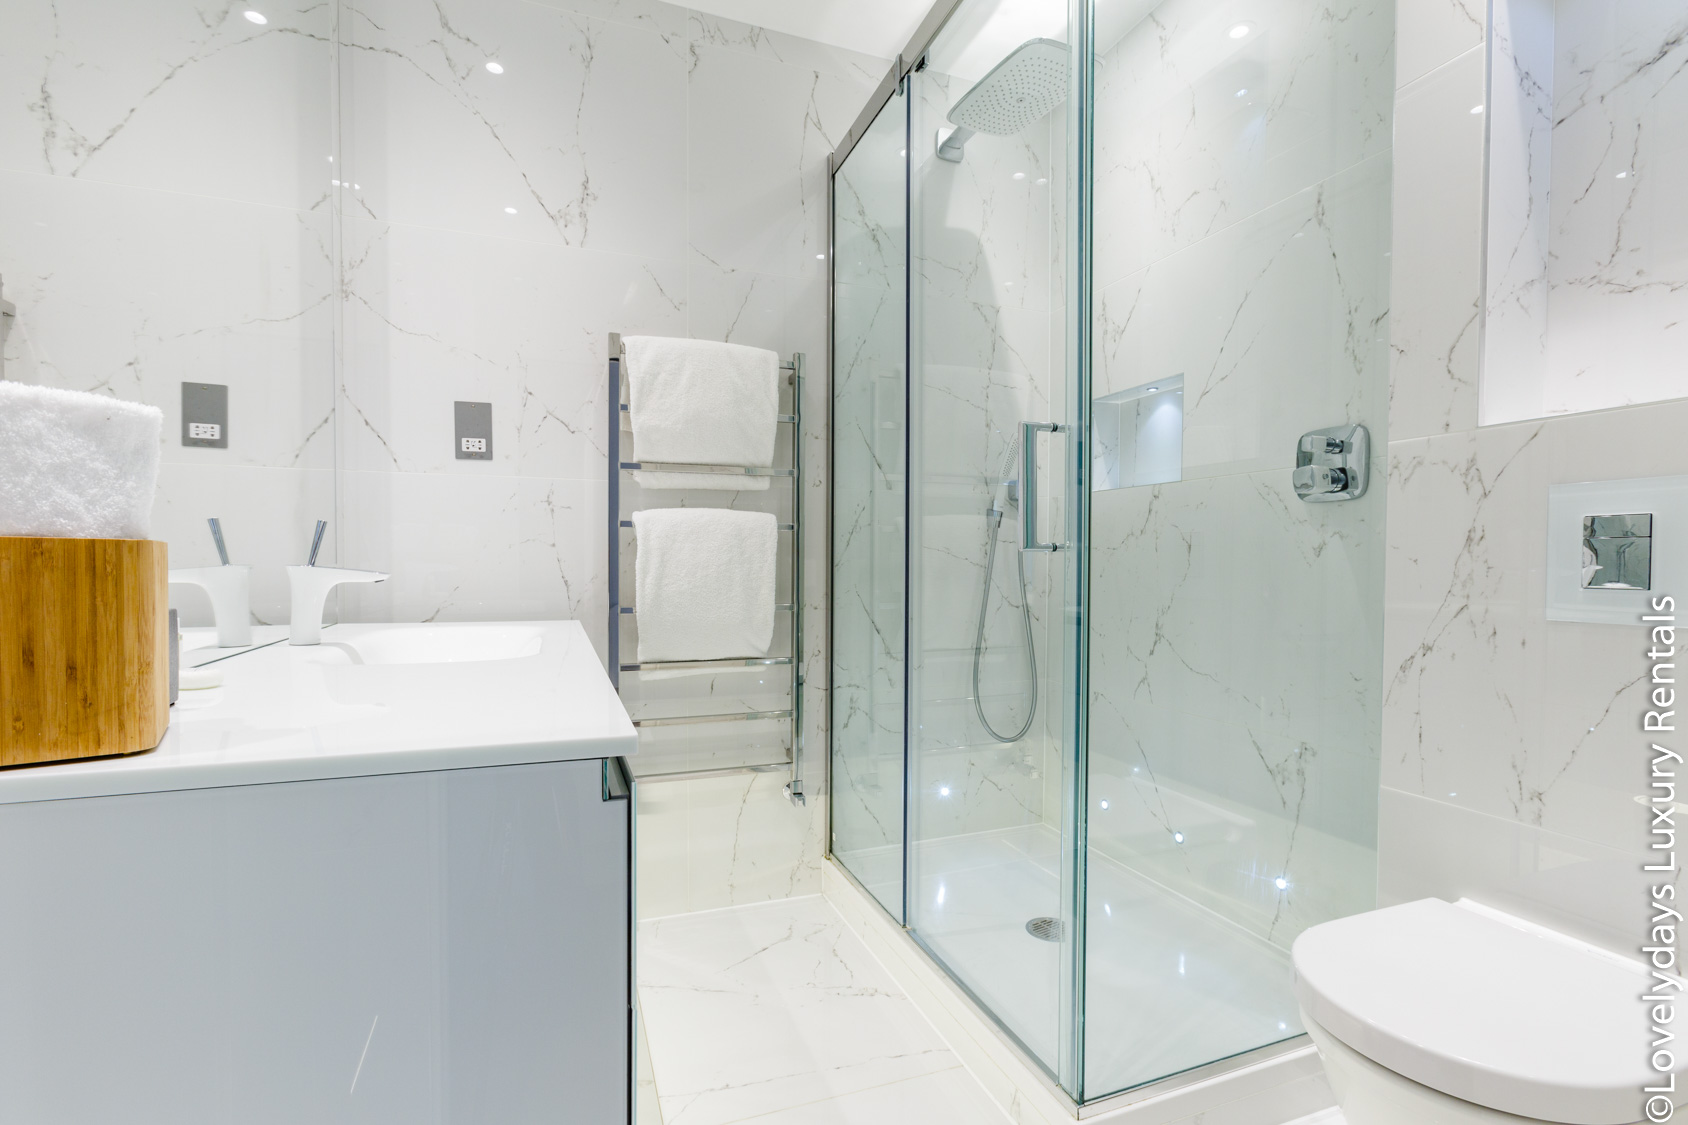 Lovelydays luxury service apartment rental - Covent Garden - Cockspur Street - Lovelysuite - 3 bedrooms - 2 bathrooms - Lovely shower - 59e449e75077 - Lovelydays